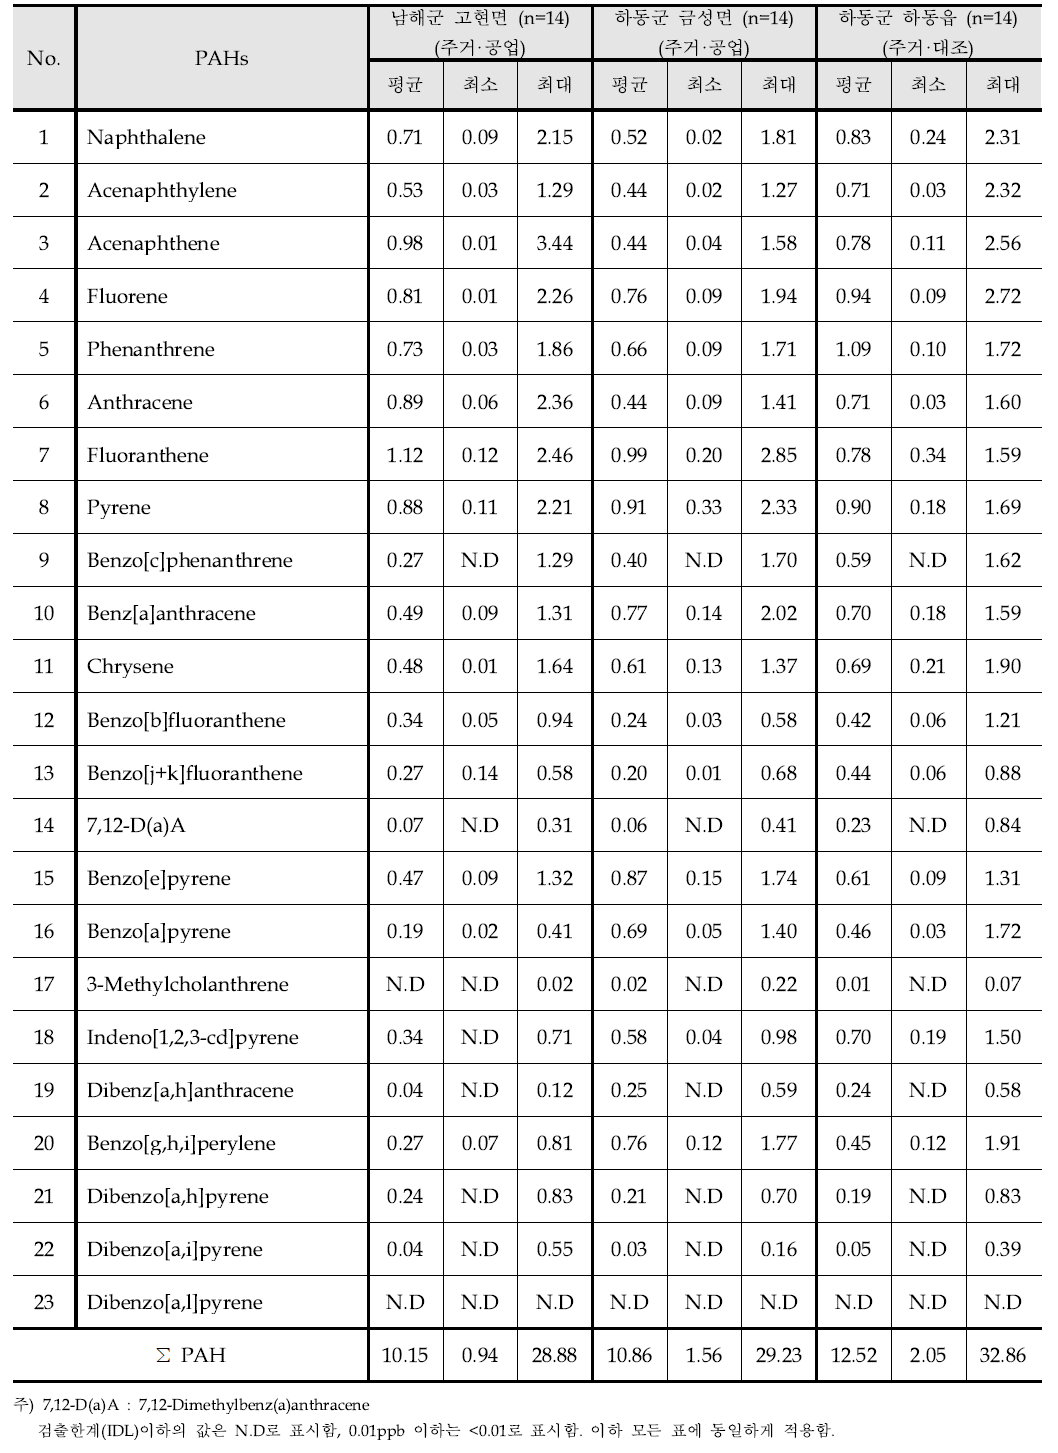 2012년 측정지점별 입자상 PAH 전체농도 - 2계절